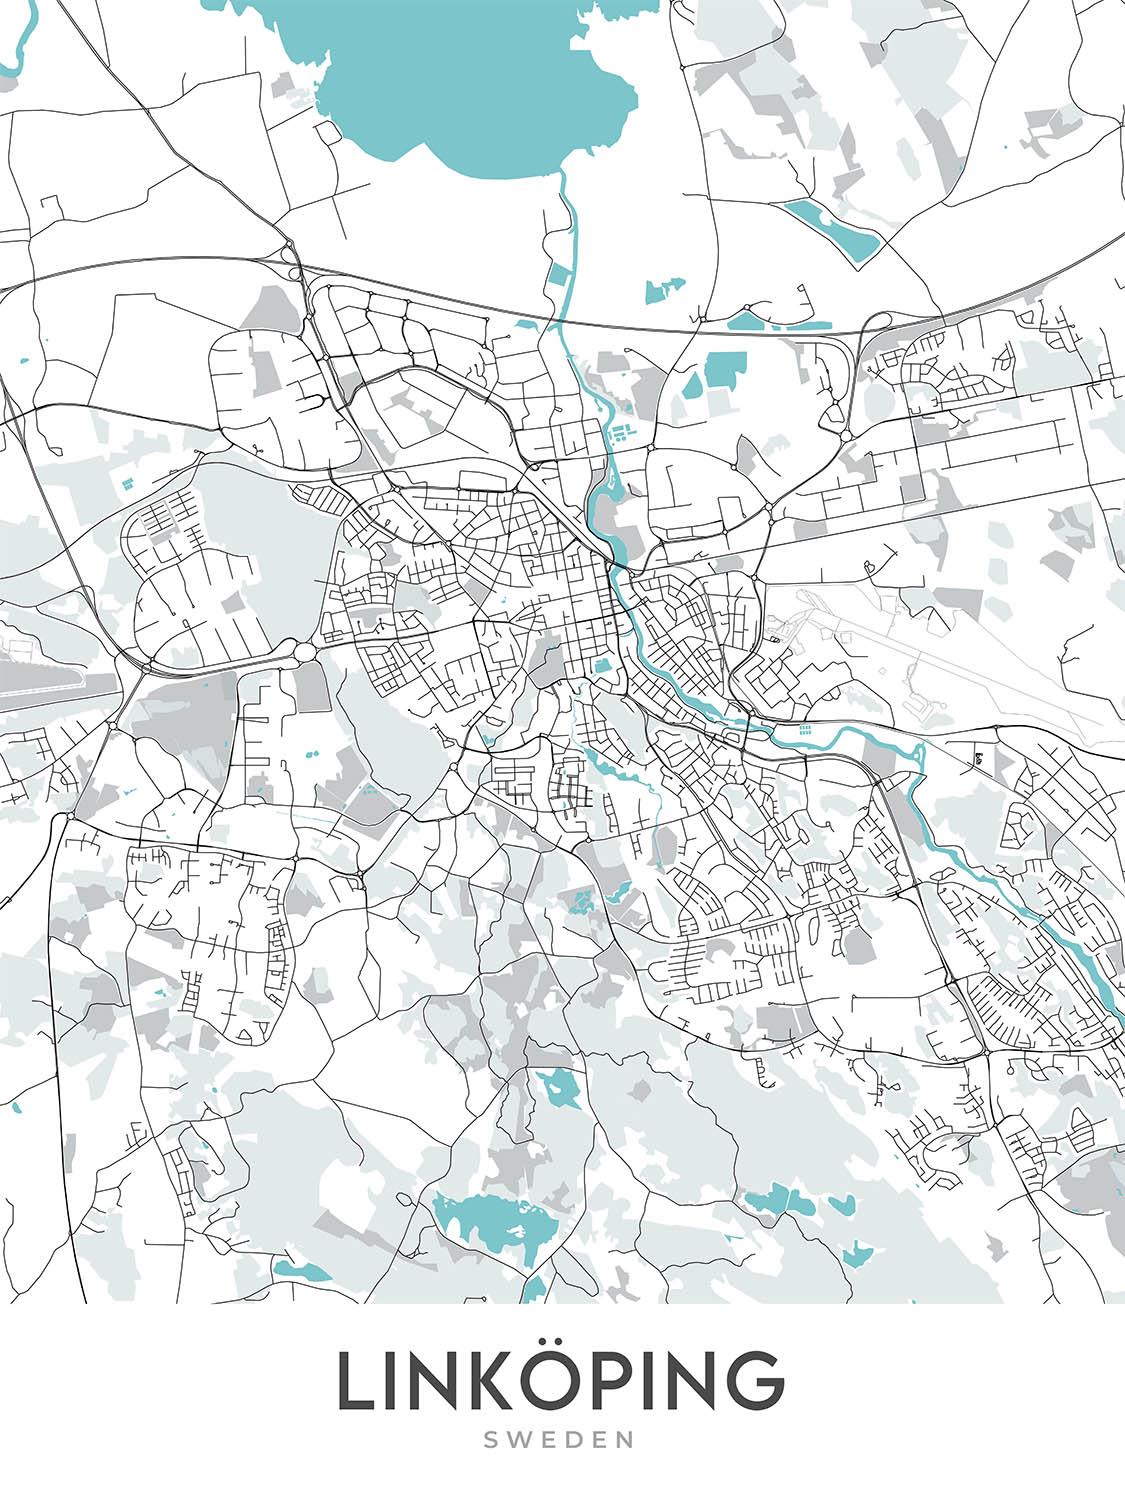 Mapa moderno de la ciudad de Linköping, Suecia: Catedral, Castillo, Universidad, E4, Stångebro